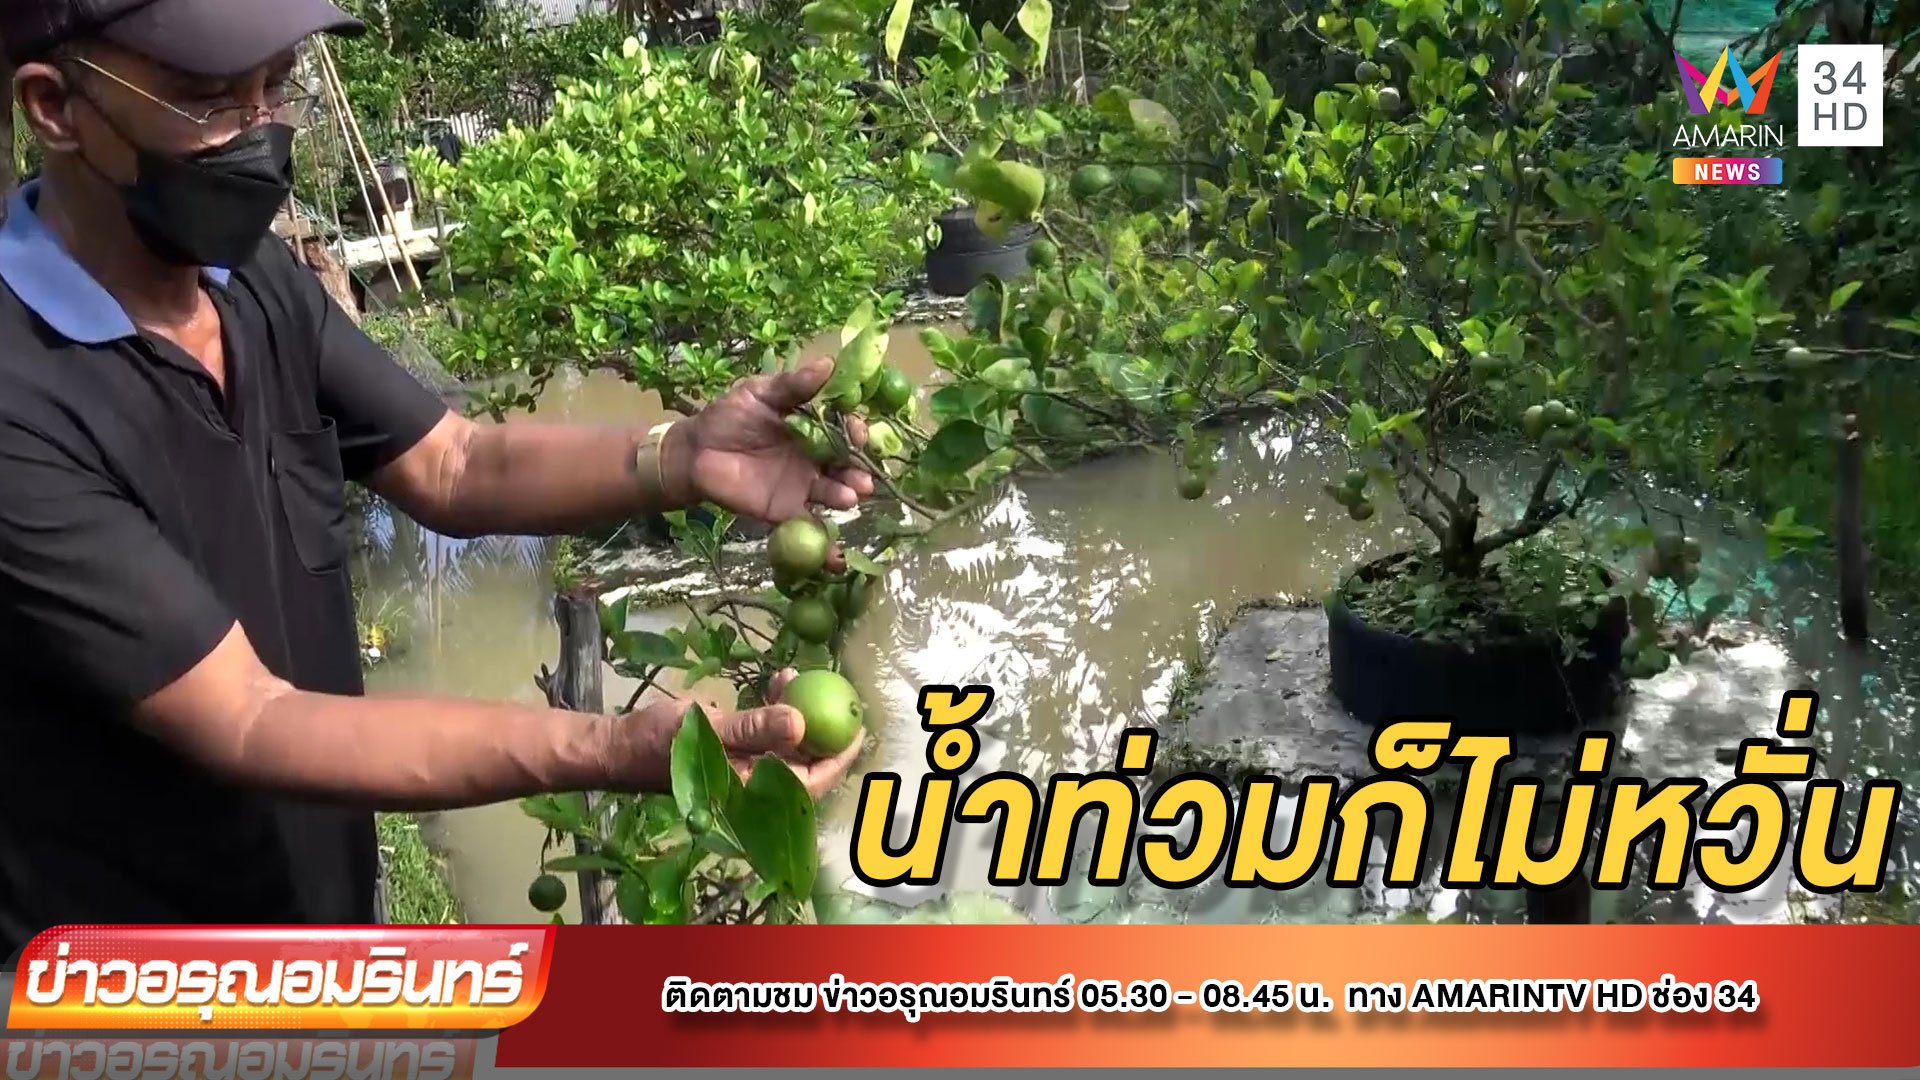 สุดเจ๋ง! เกษตรกรปรับตัวทำ “สวนมะนาวสะเทินน้ำสะเทินบก” | ข่าวอรุณอมรินทร์ | 18 พ.ย. 64 | AMARIN TVHD34